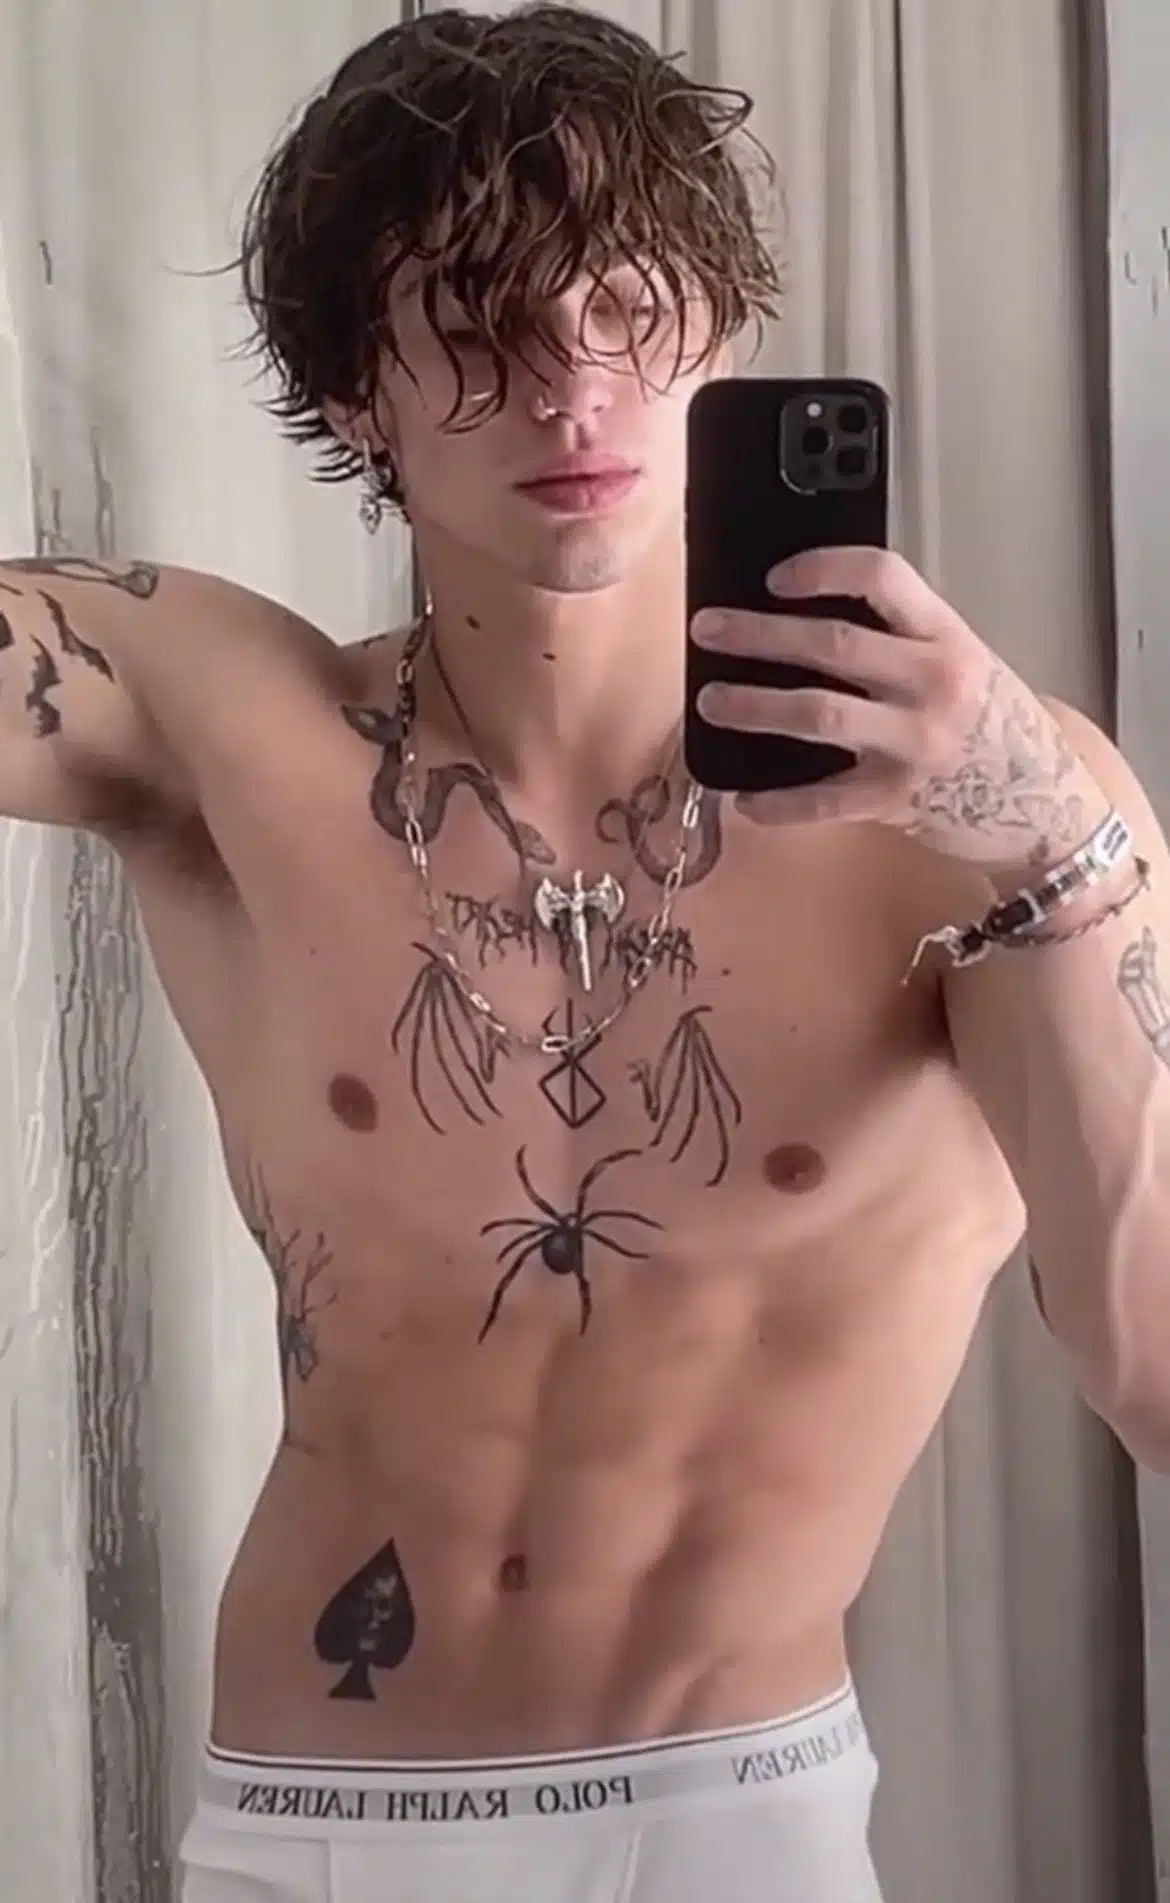 Vinnie hacker spider tattoo